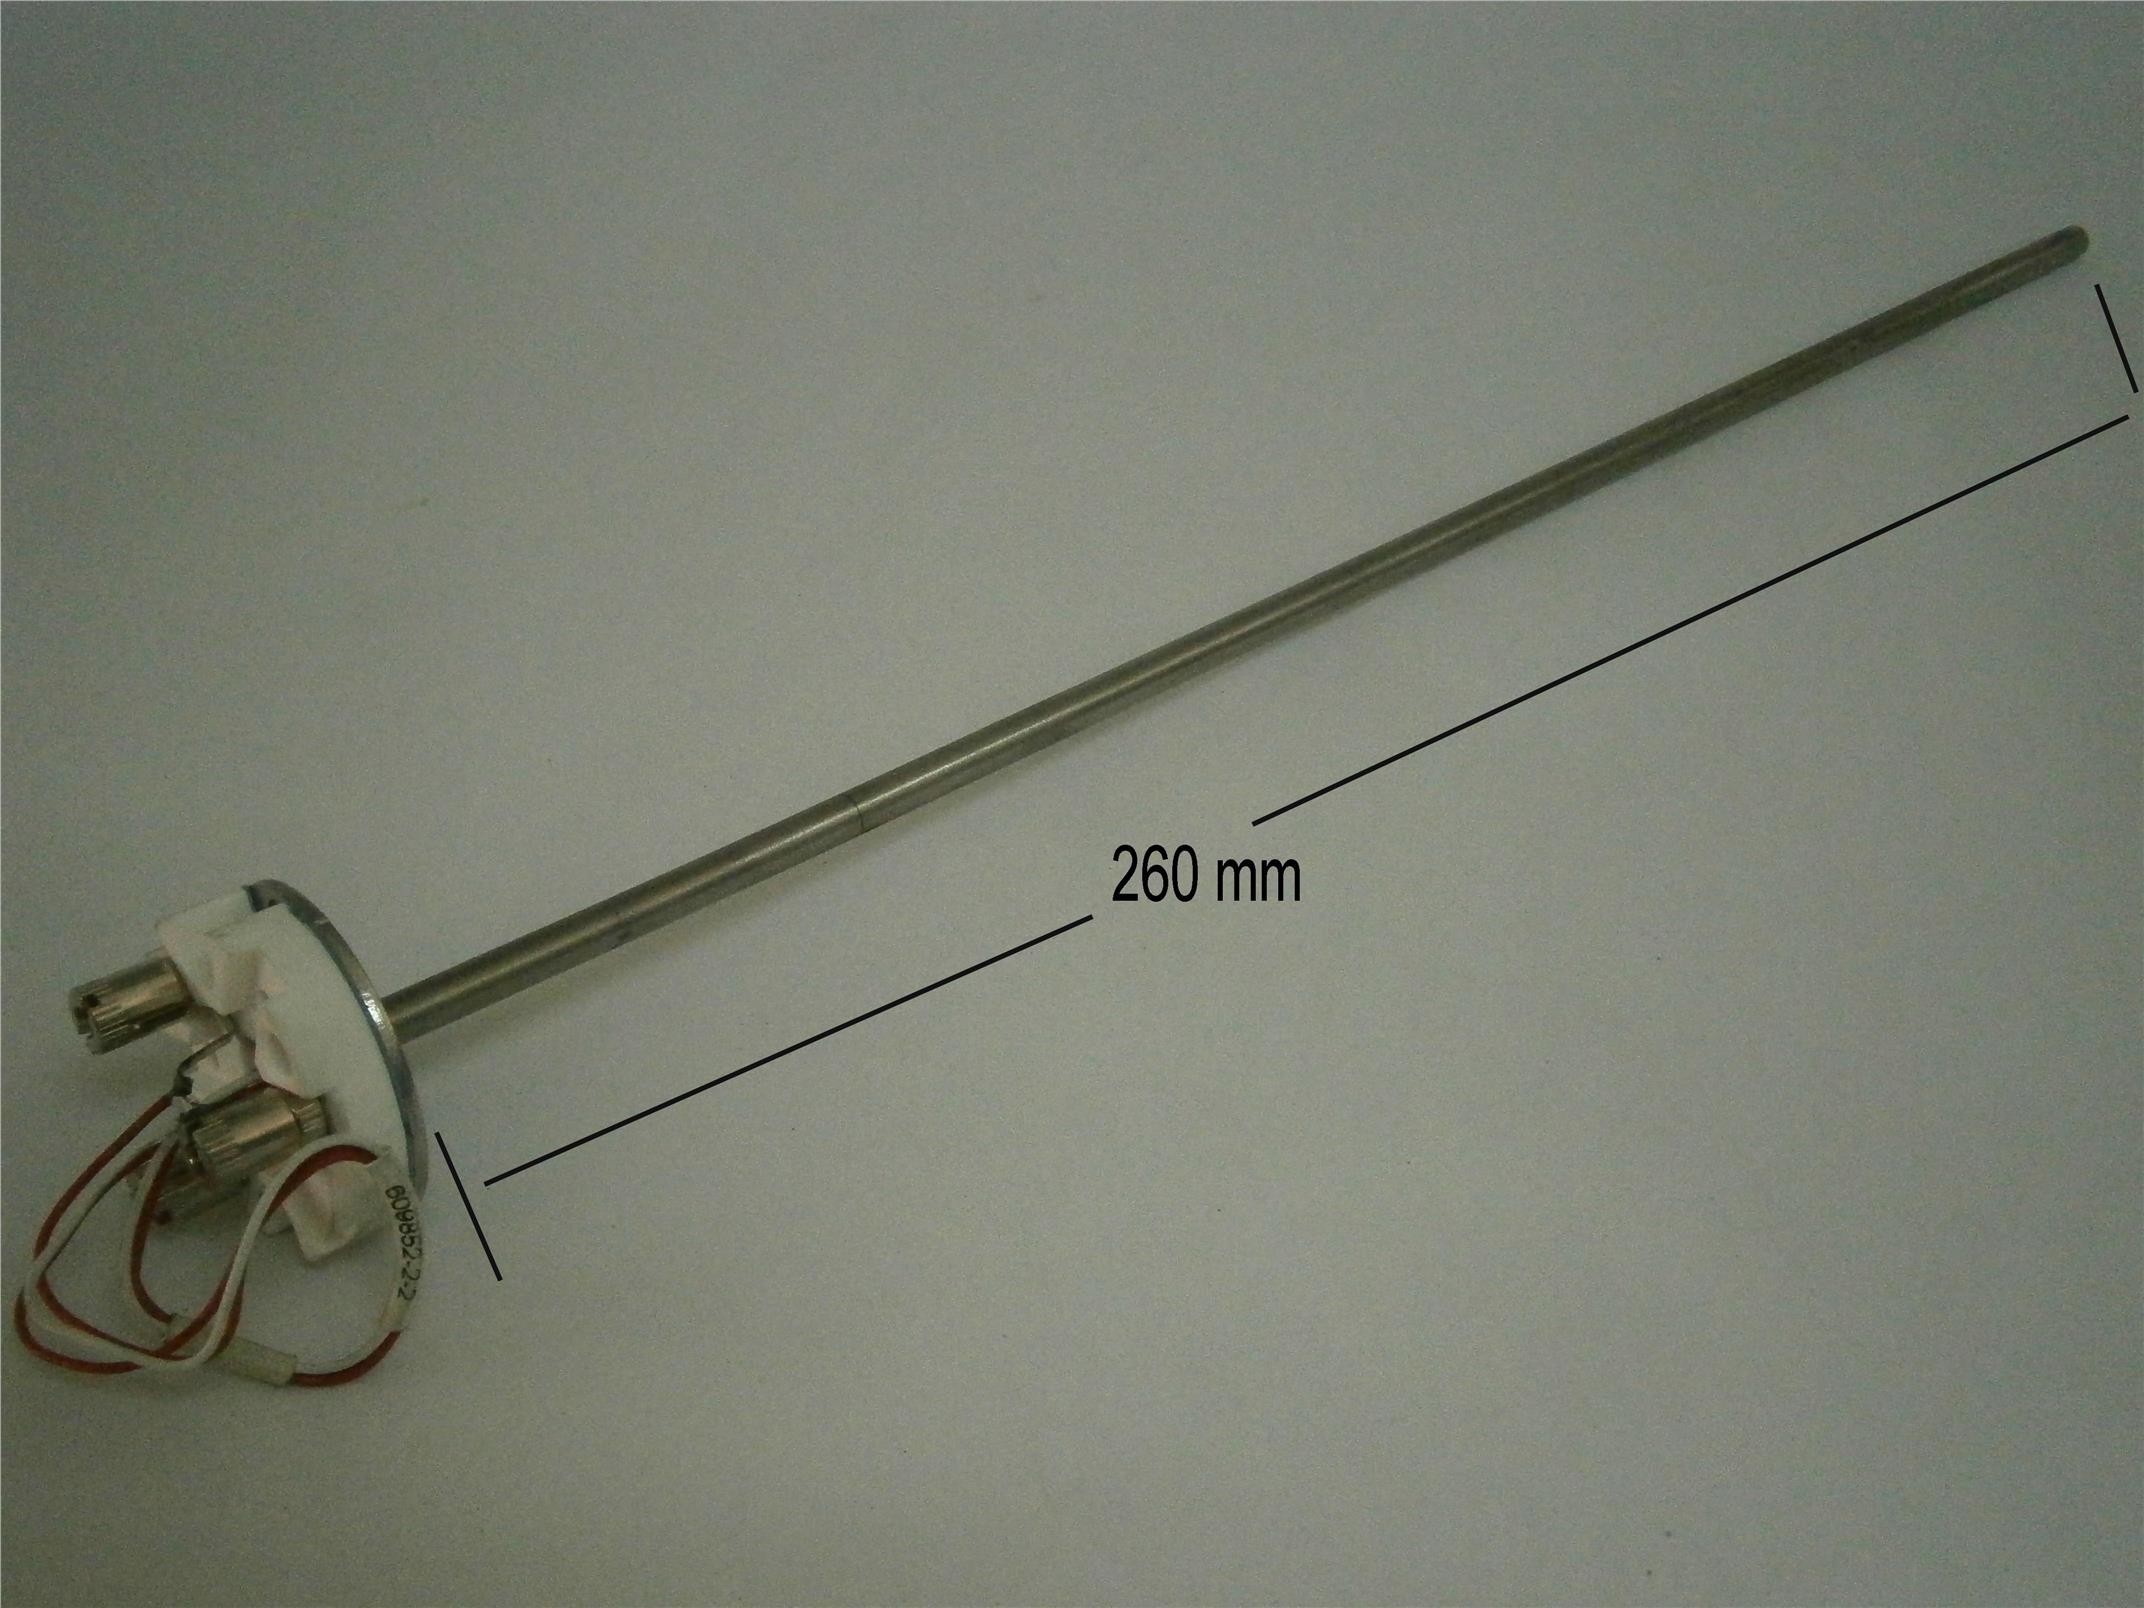 Temperature sensor, Pt100, 260 mm